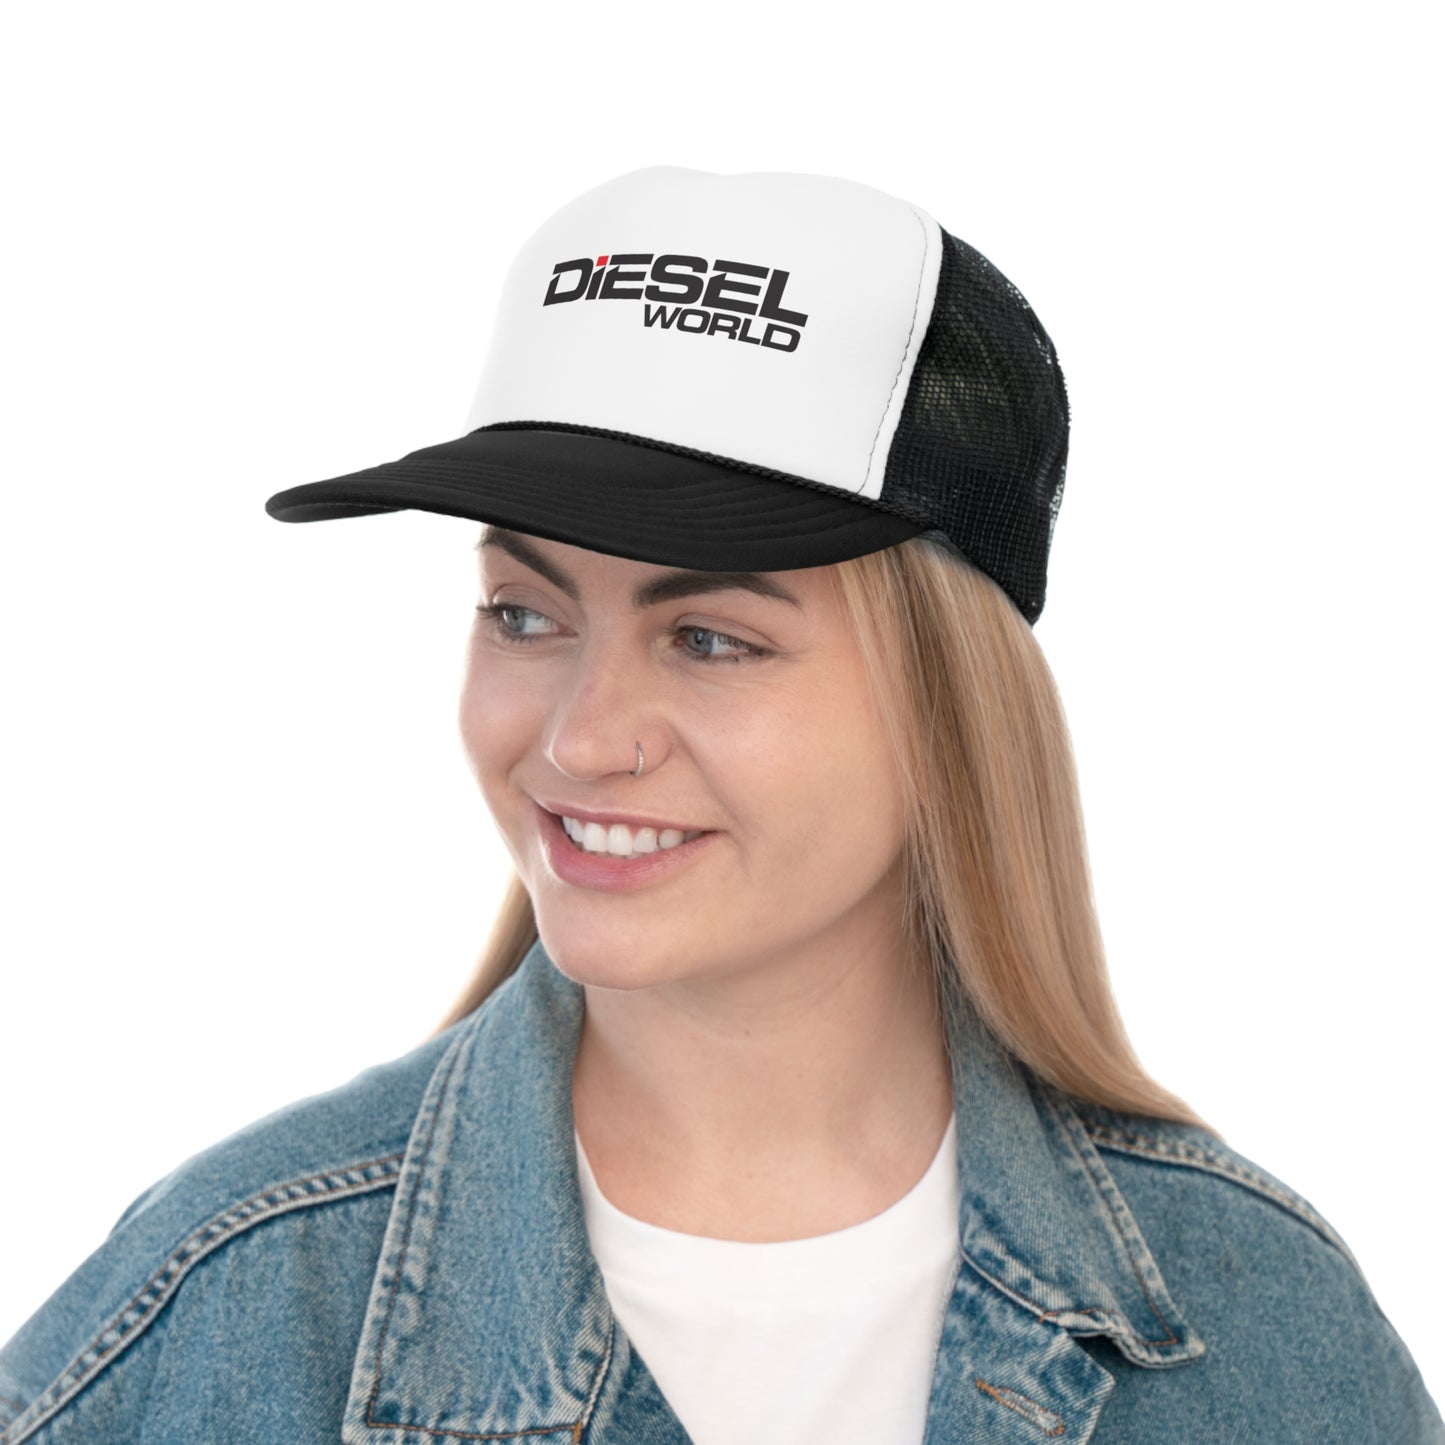 Diesel World - Trucker Caps